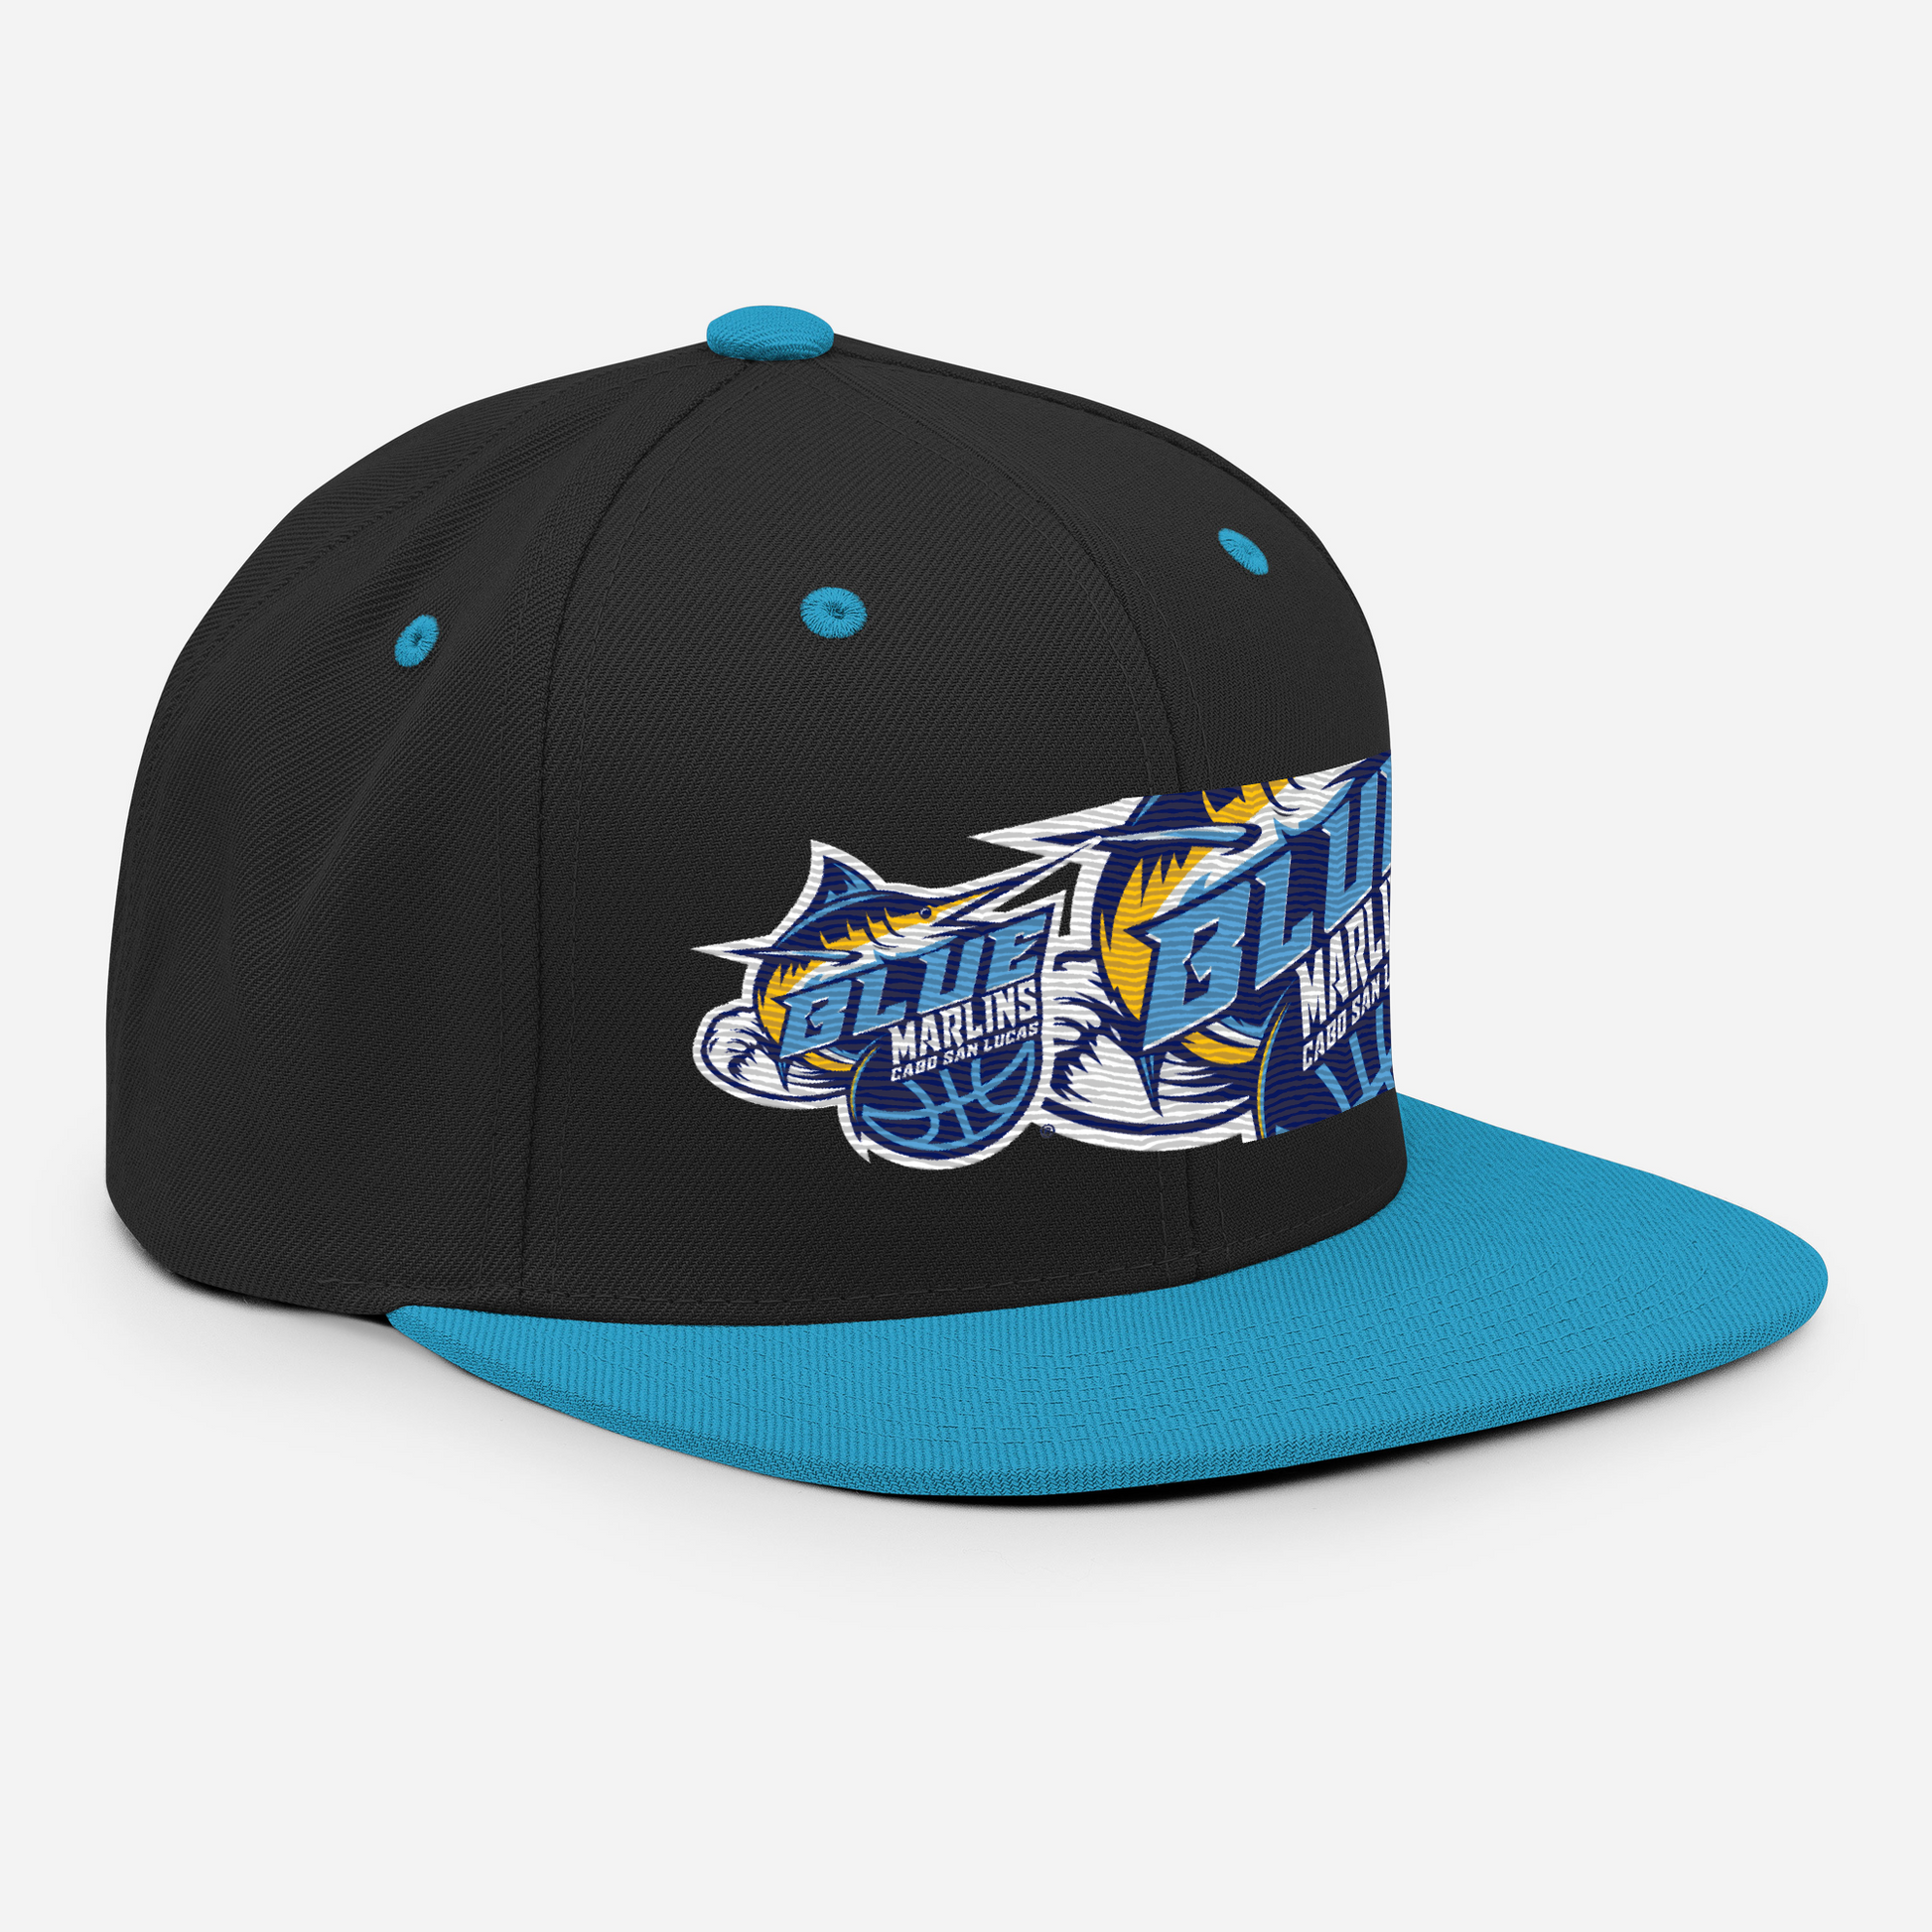 The Blue' Blue Marlins Team Hat Black/ Teal